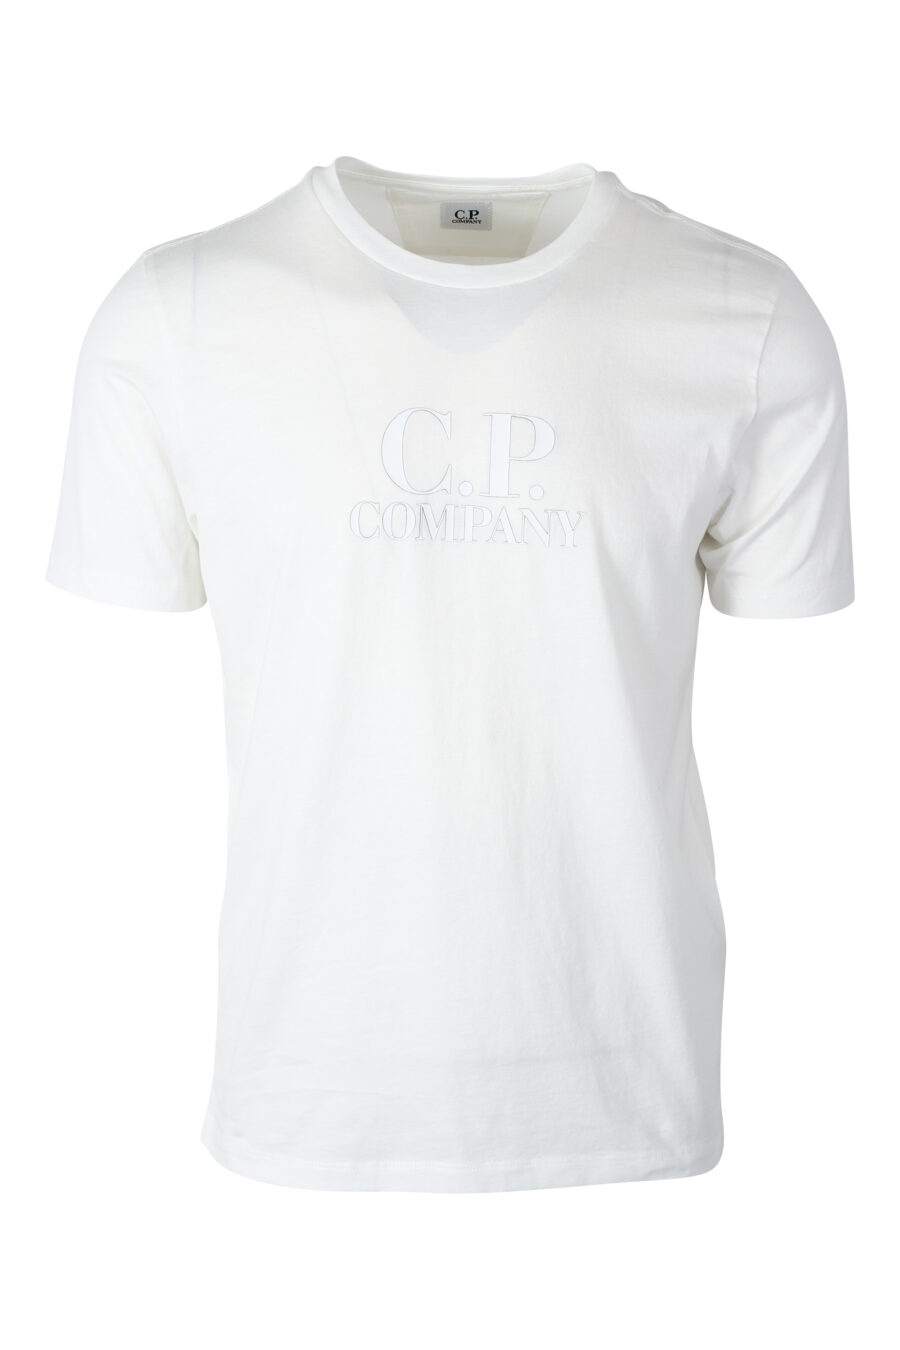 Camiseta blanca con maxilogo monocromático - IMG 2422 1